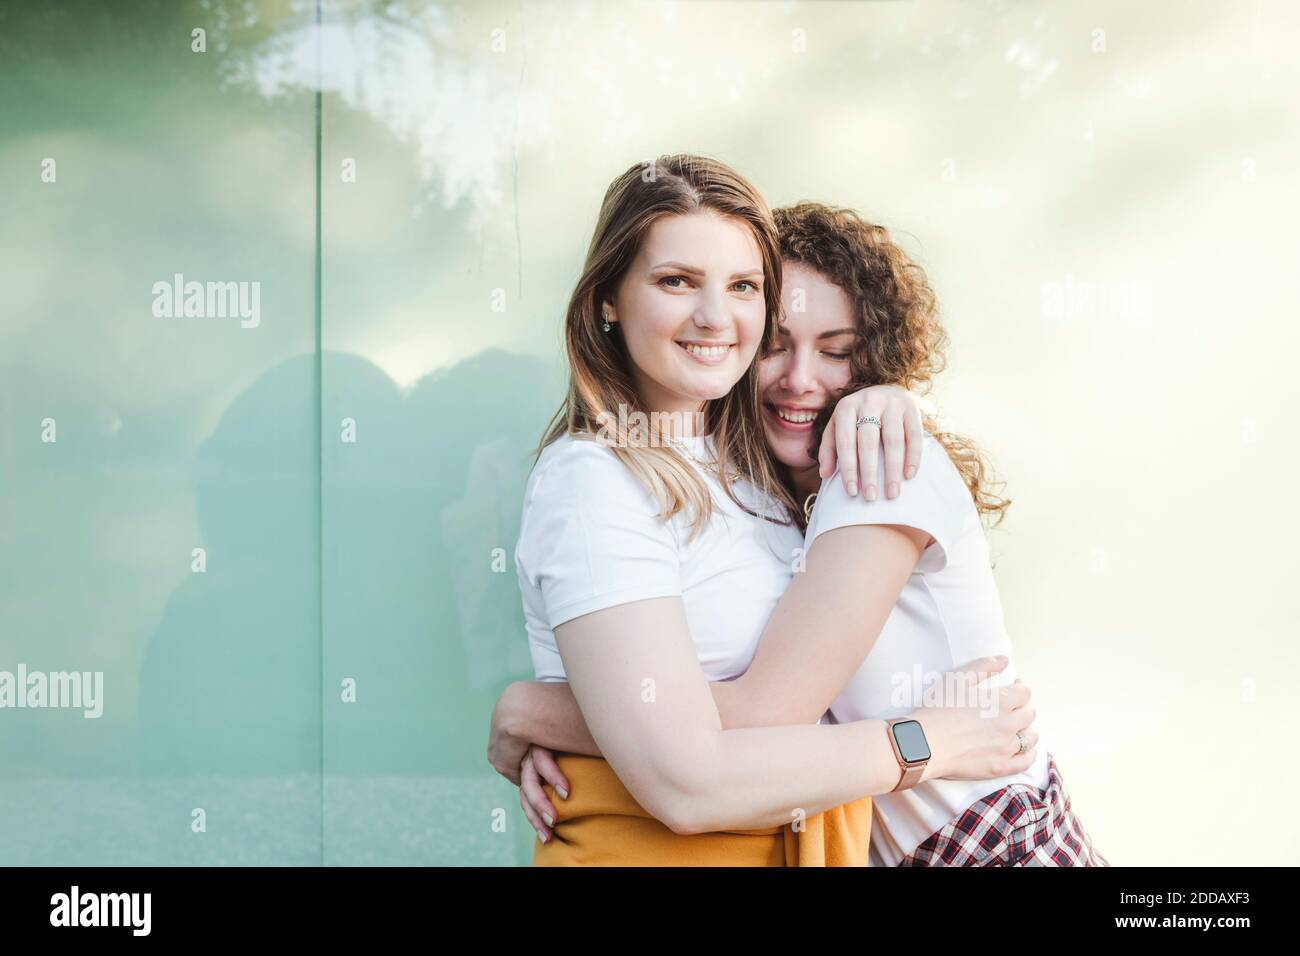 Lächelnd schöne Frau wird von jungen weiblichen Freund gegen umarmt Wand Stockfoto